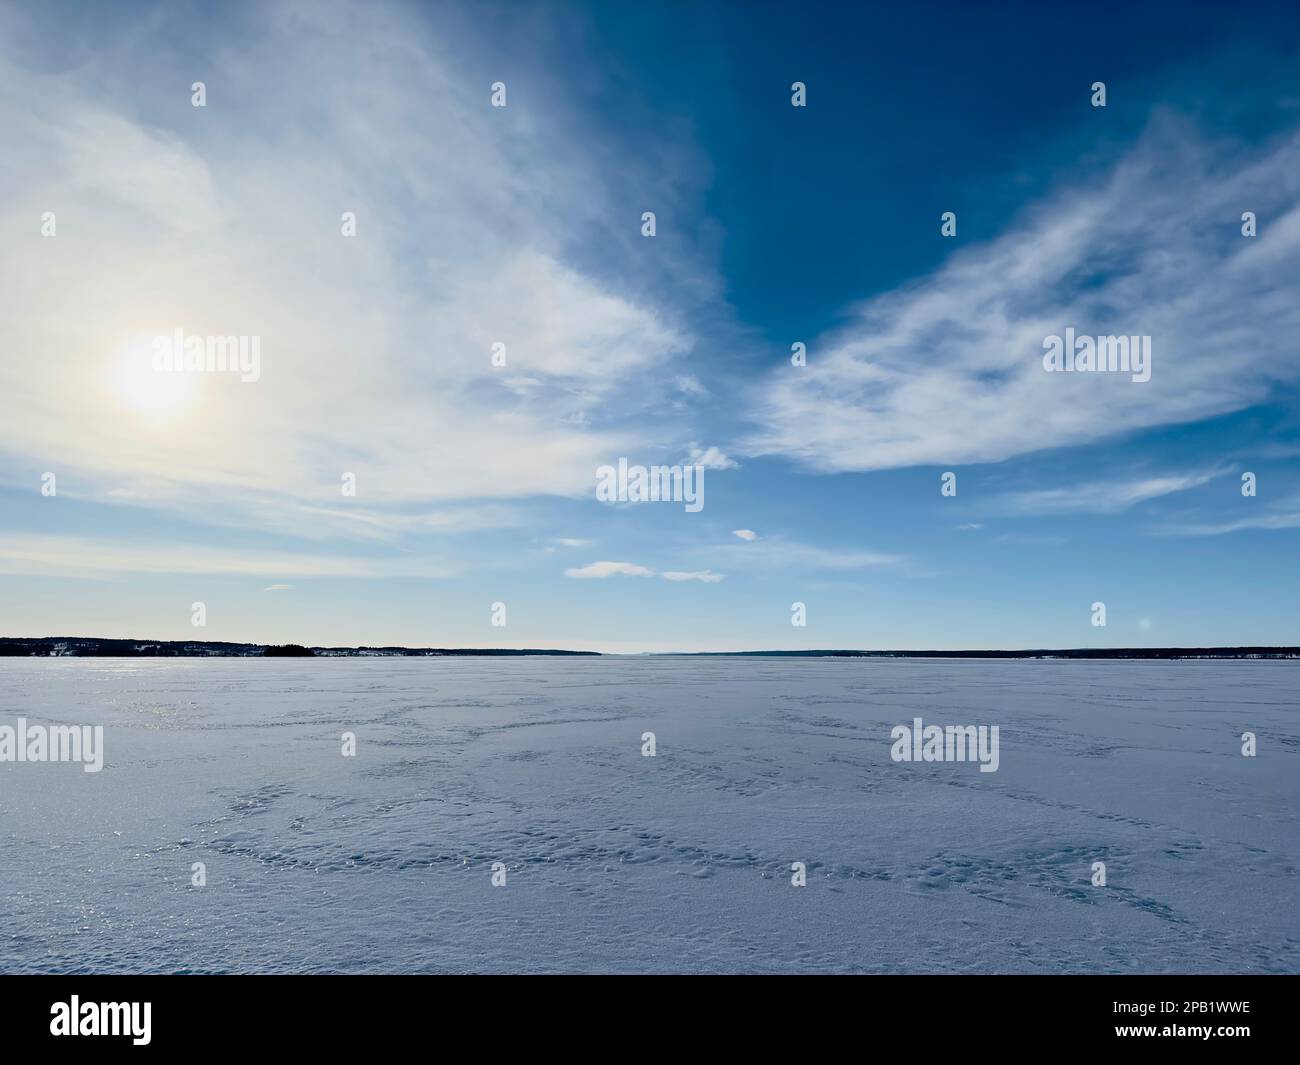 Paysage d'hiver du nord de la Suède Banque D'Images